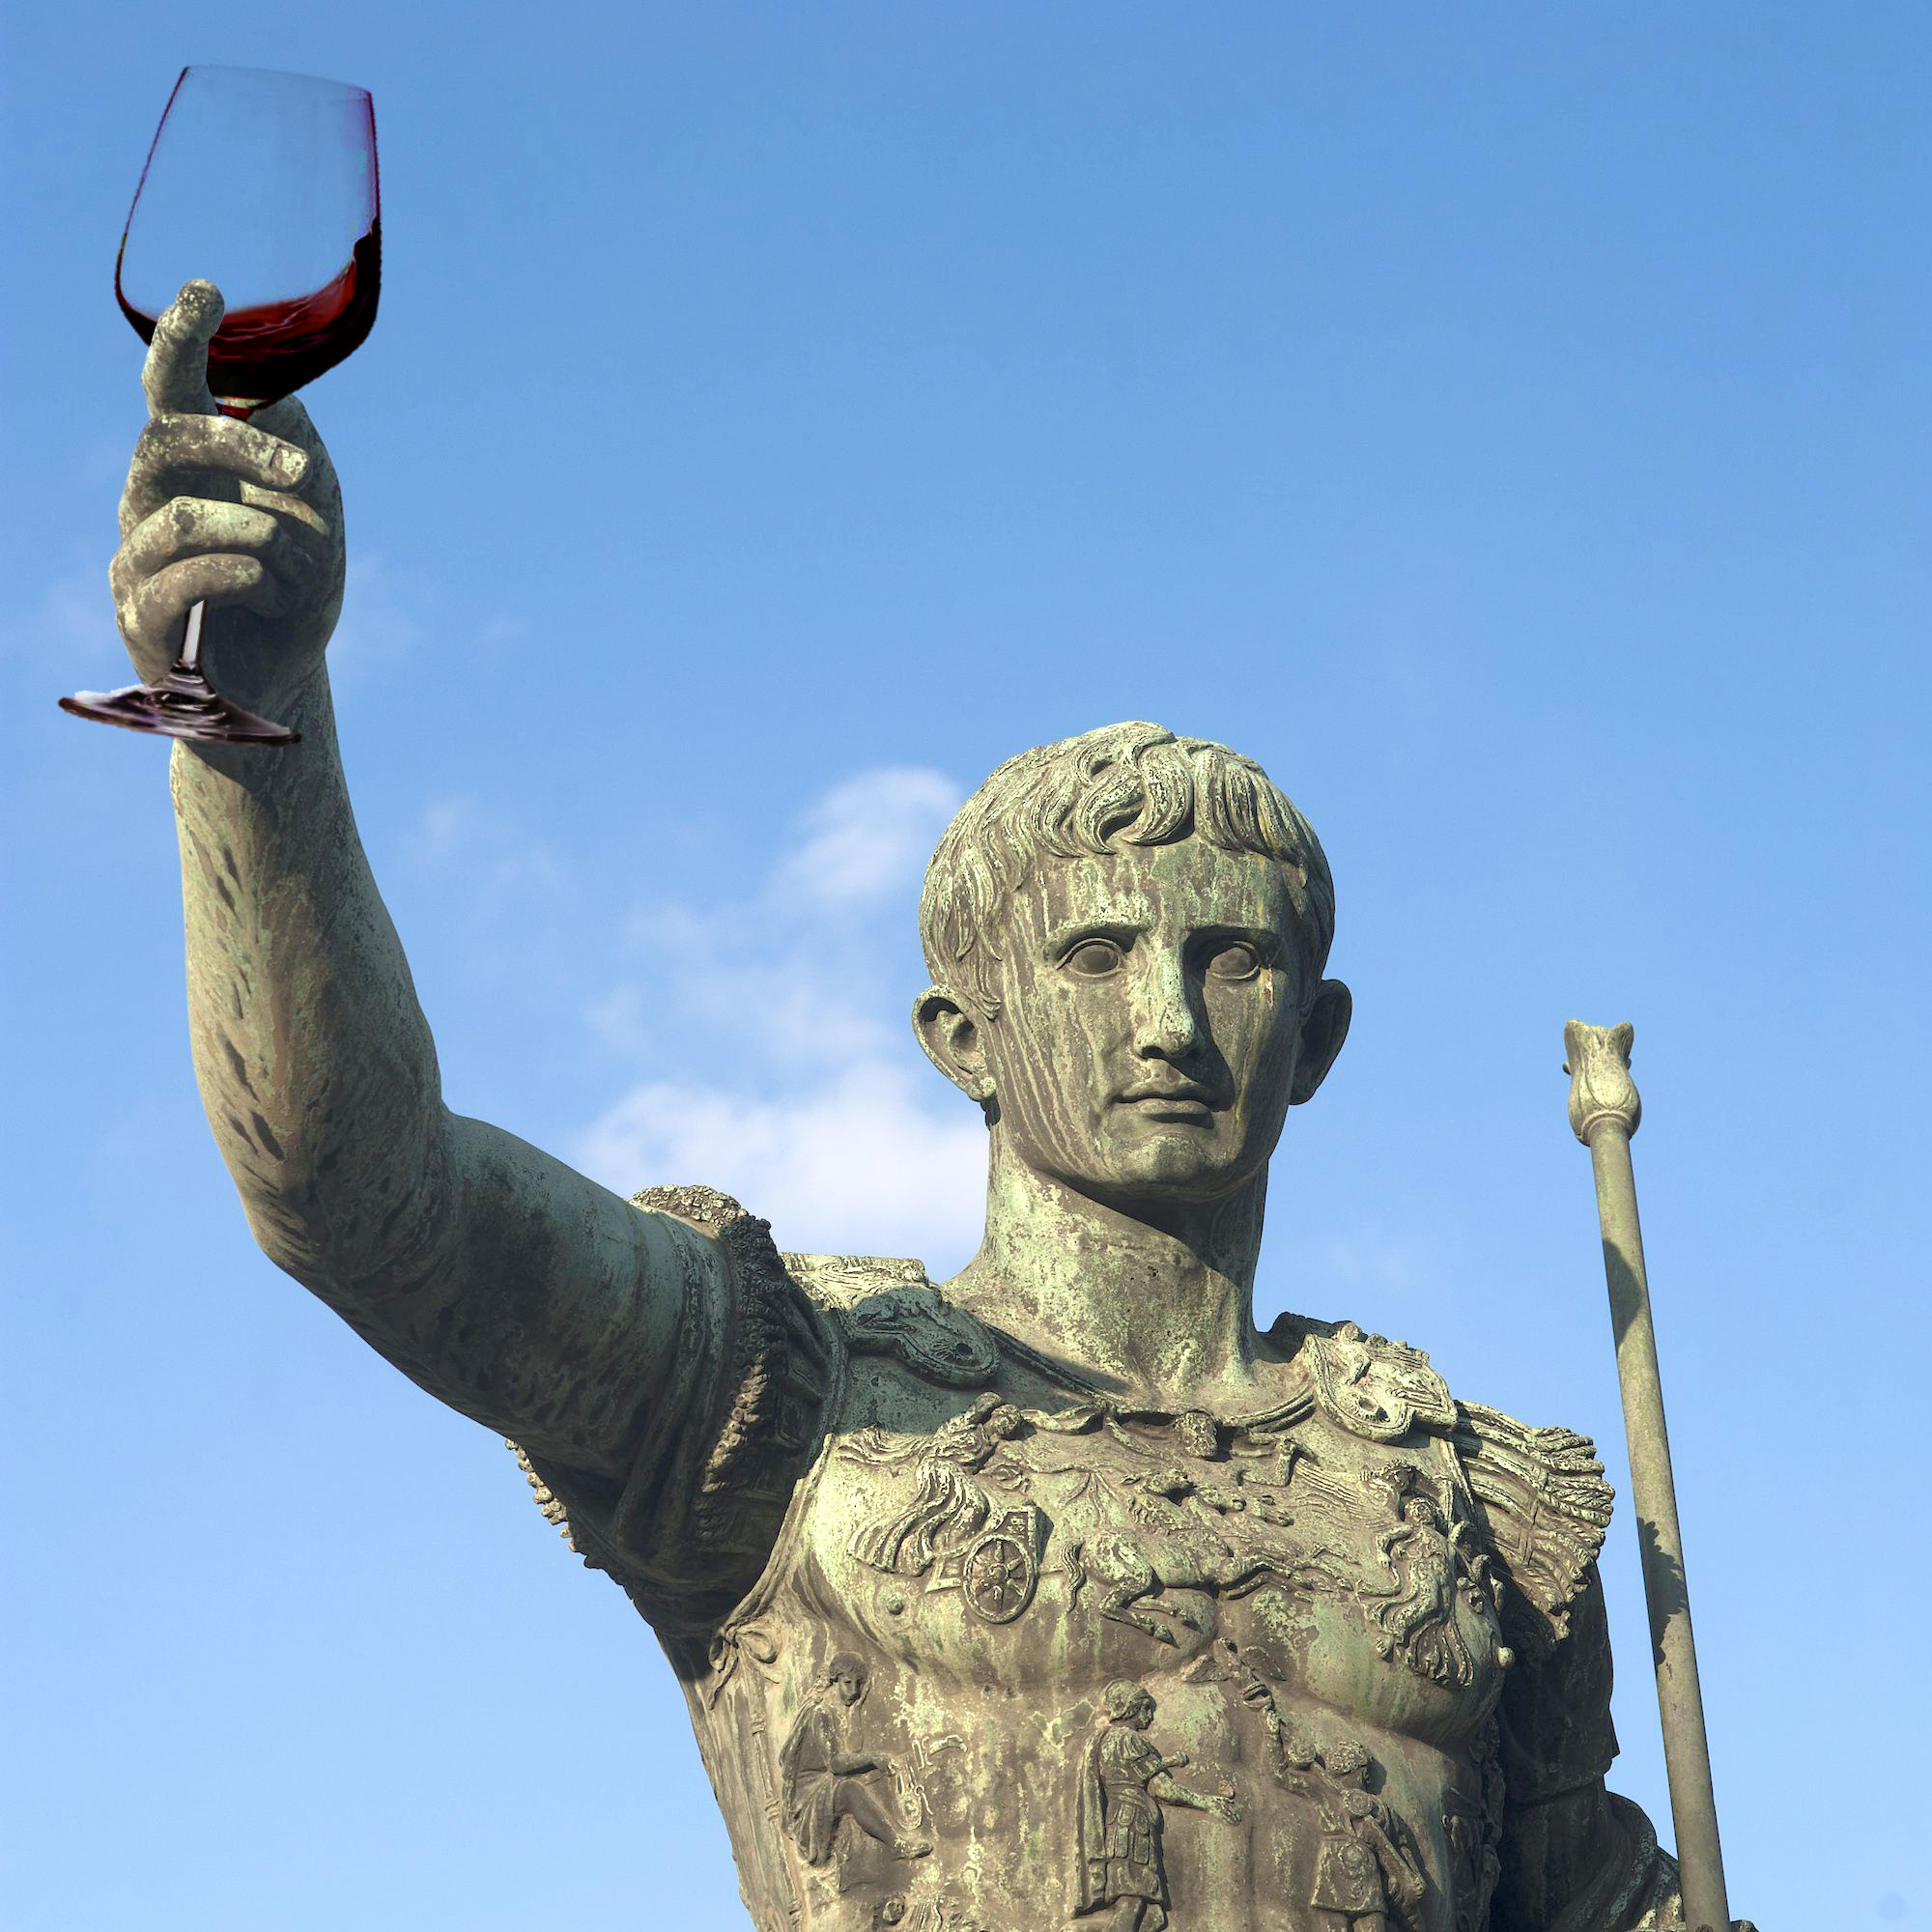 Episode 38: Hva drakk Romerne?